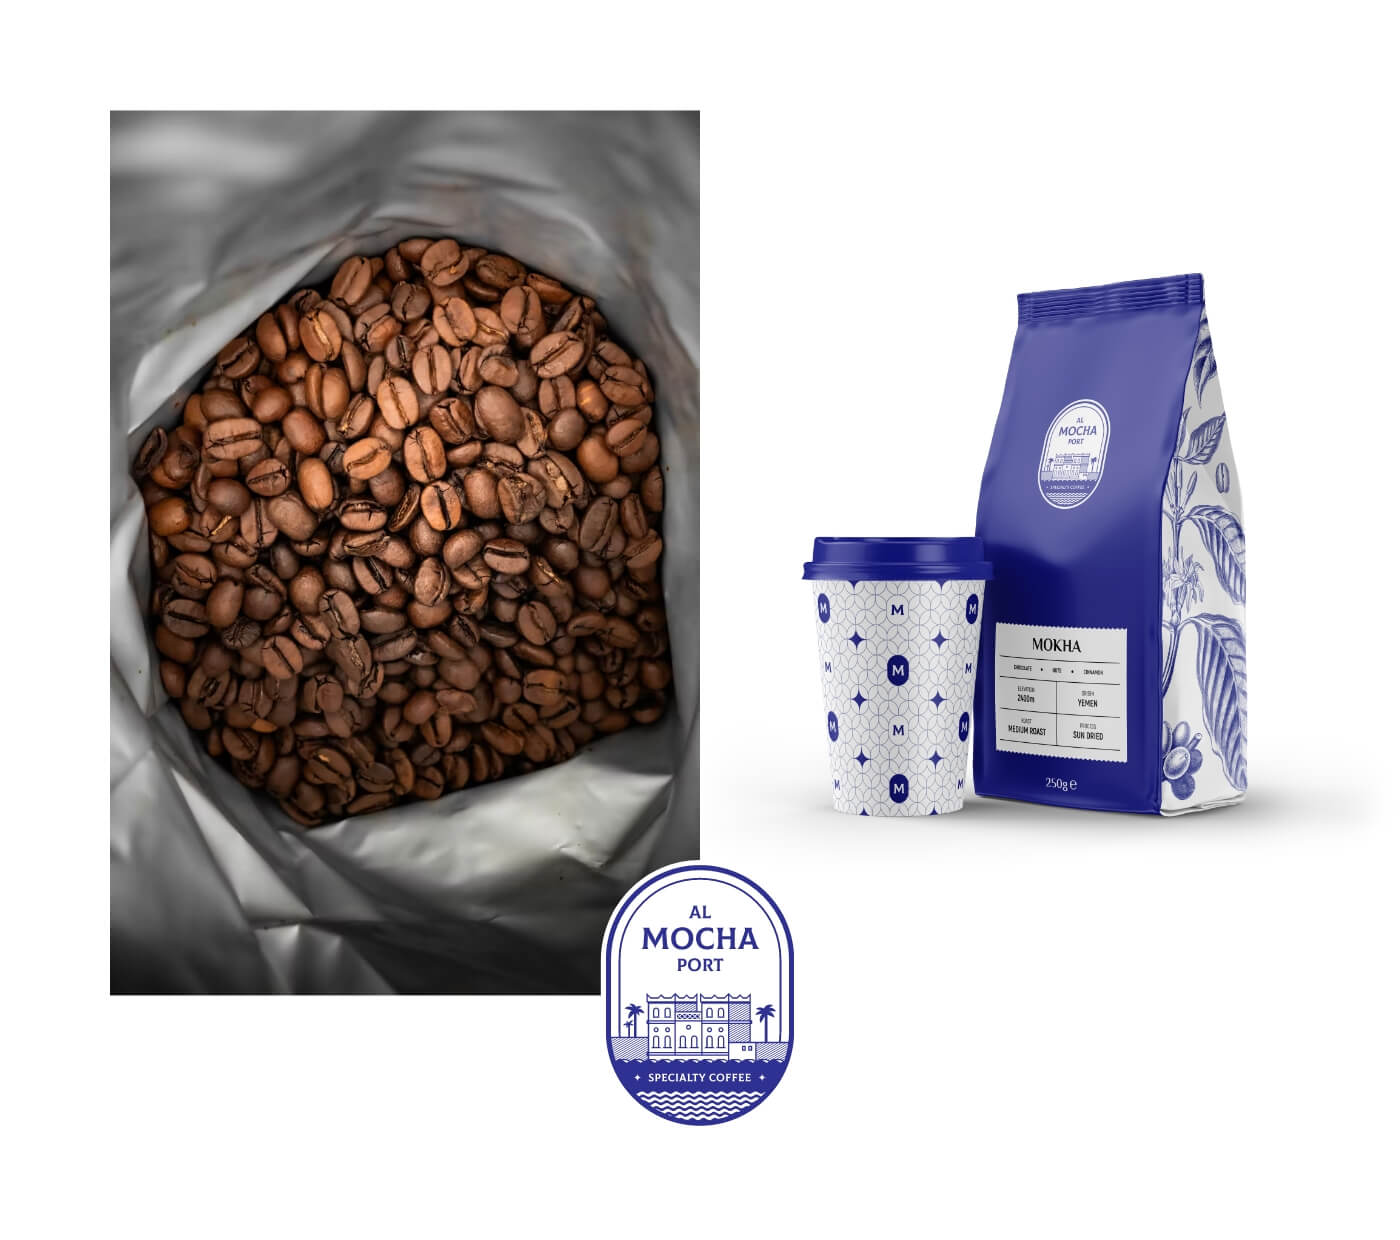 Al Mocha Port – Specialty Coffee